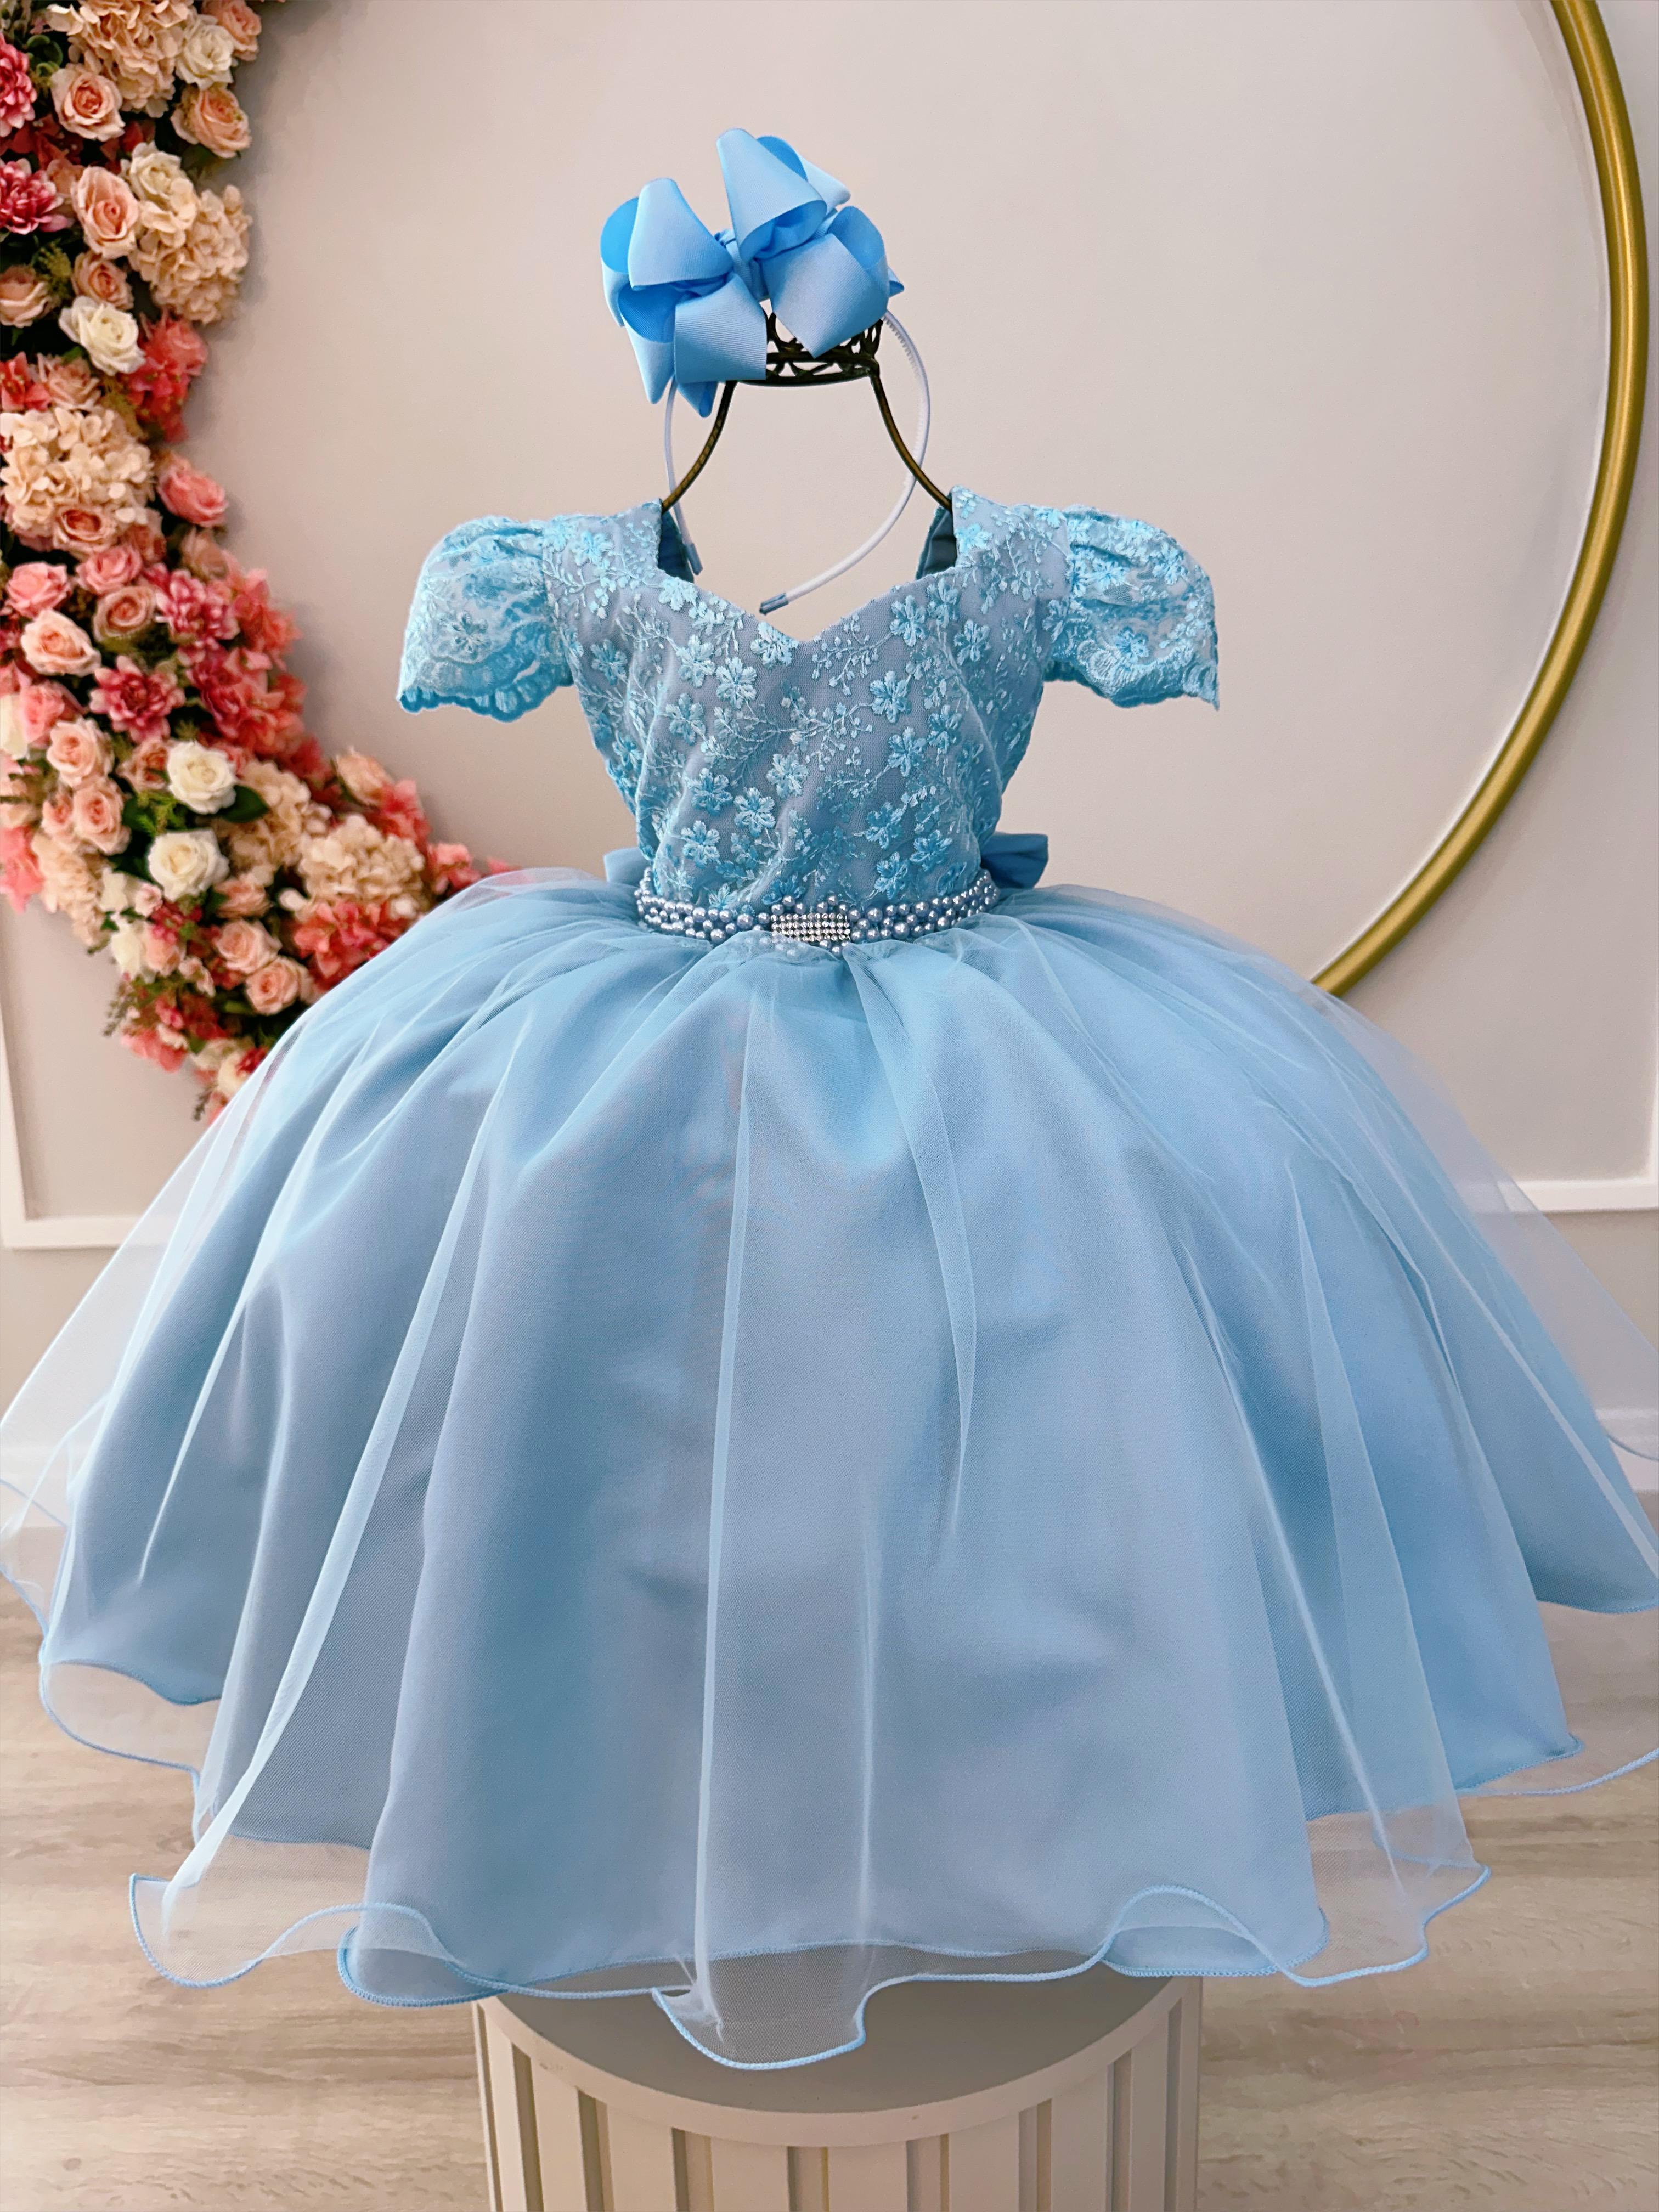 Vestido Infantil Azul C/ Renda e Cinto de Pérolas Festas